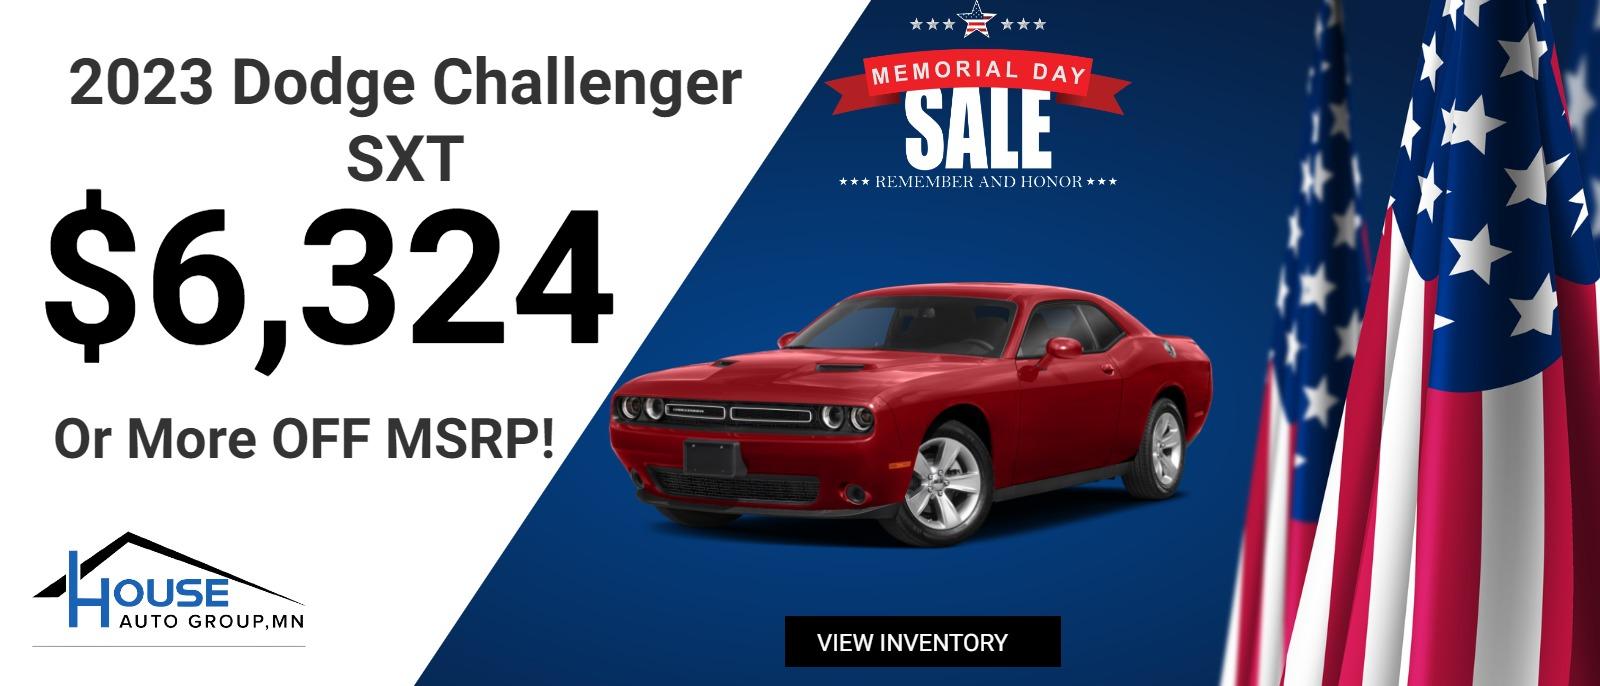 2023 Dodge Challenger SXT - $6,324 Or More Off MSRP!